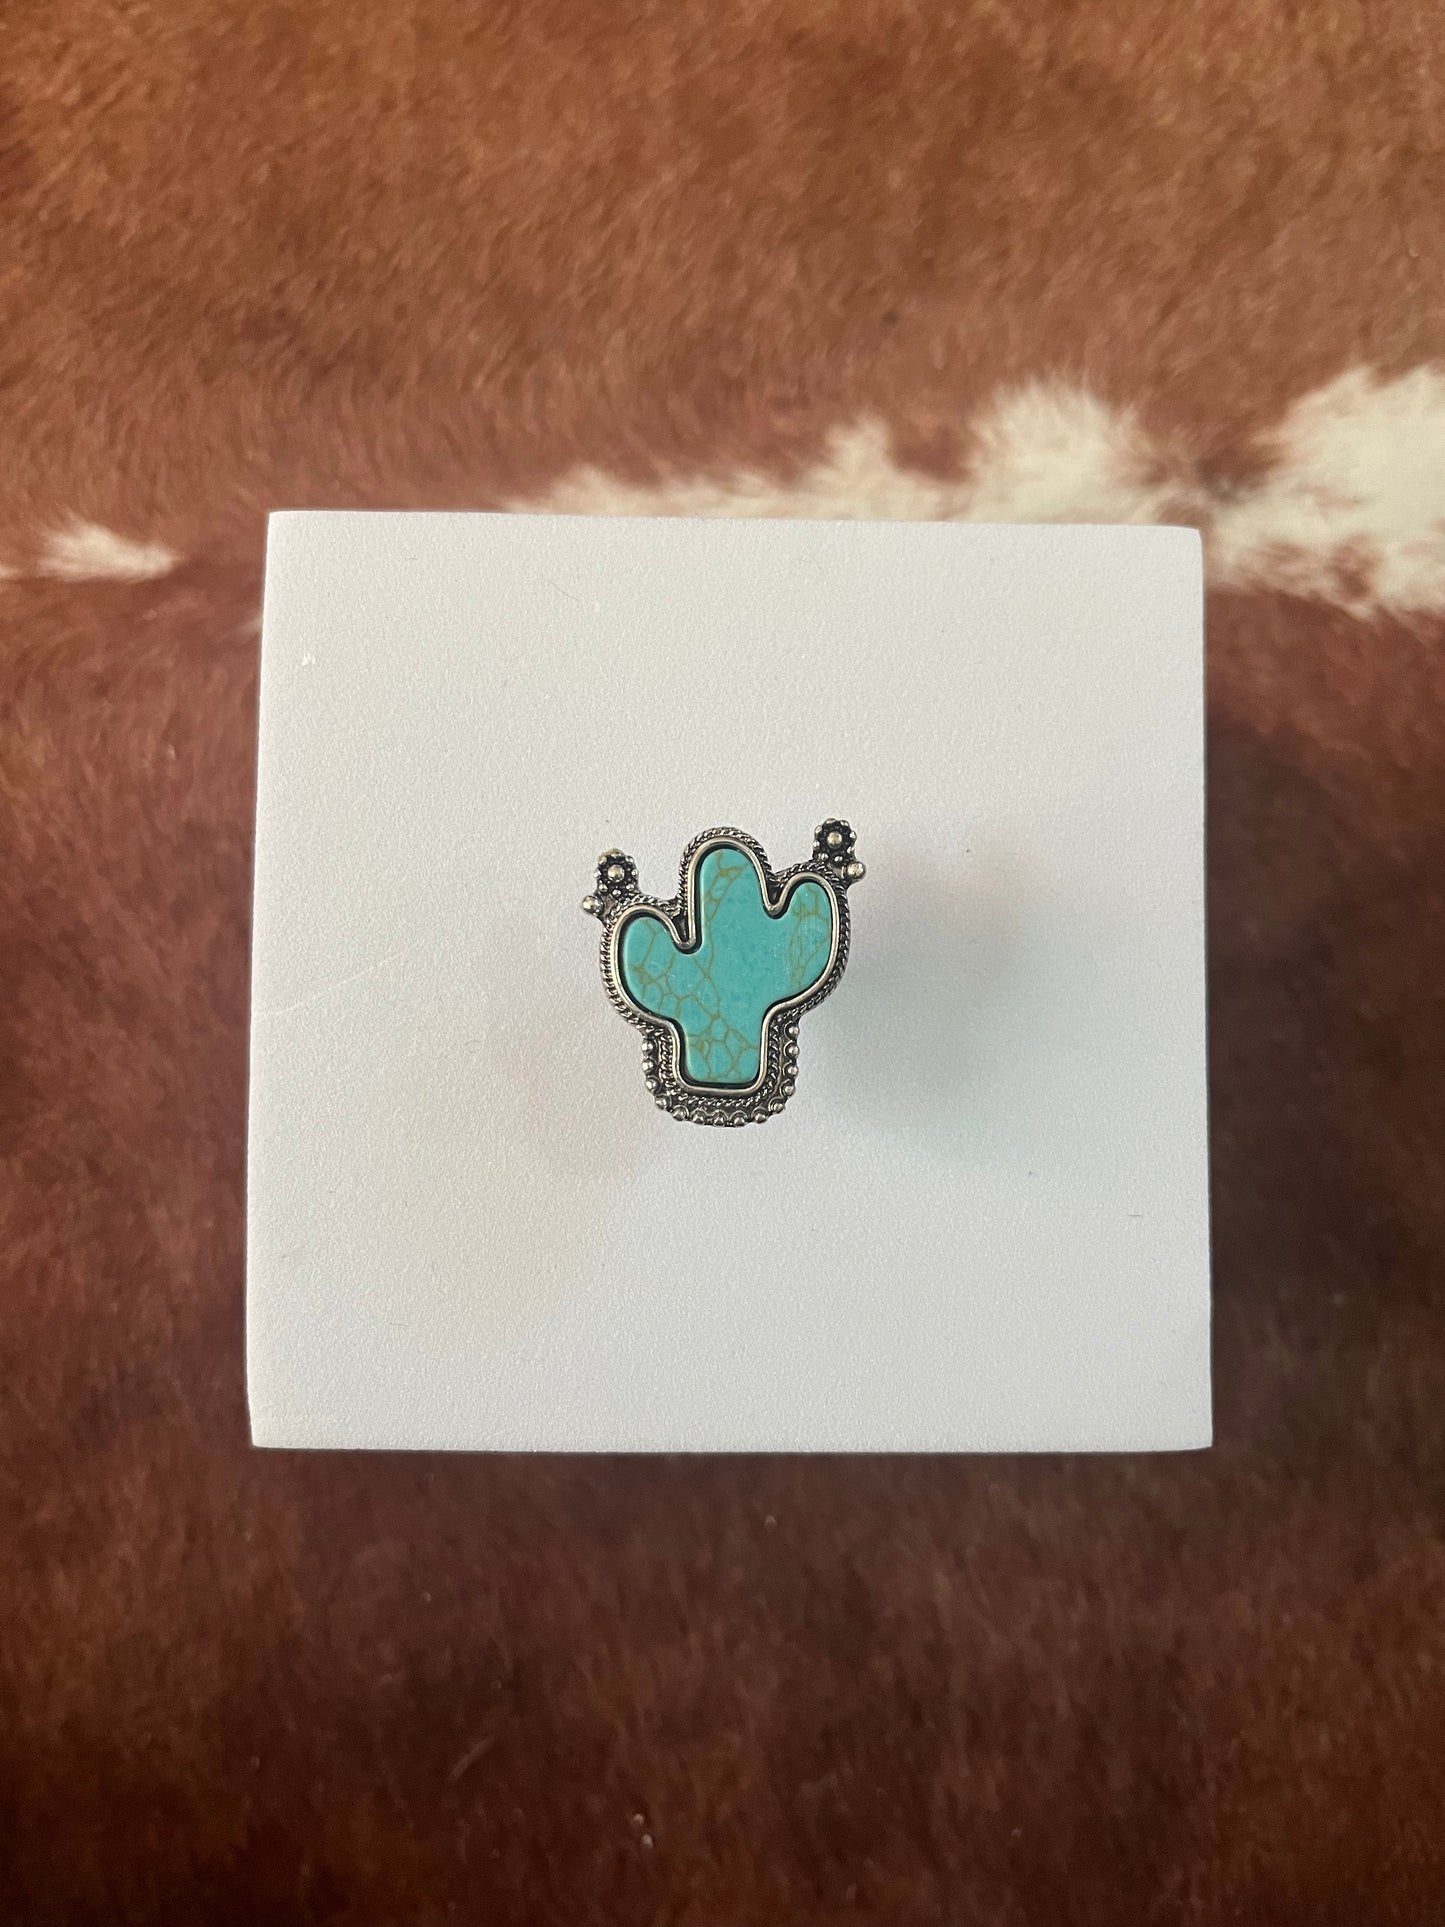 Turquoise Cactus Ring